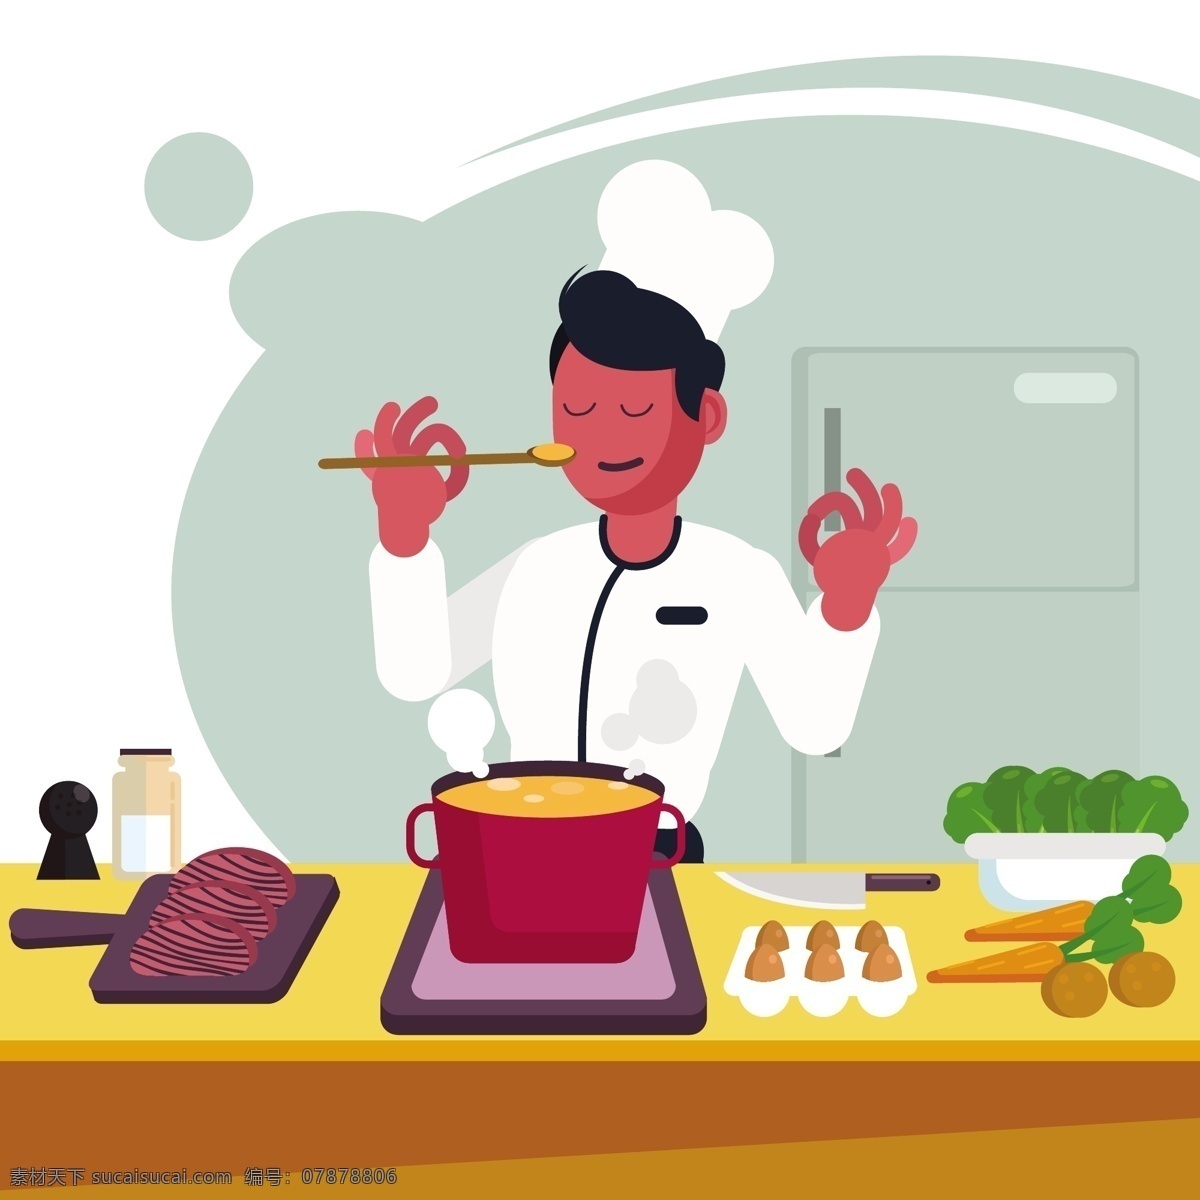 餐饮 烹饪 主题 卡通 插画 扁平化 矢量插画 创意装饰 图案设计 美食 食物 厨房主题 烹饪插画 料理插画 餐饮插画 肉类 蔬菜 厨师插画 调料 厨具 动漫动画